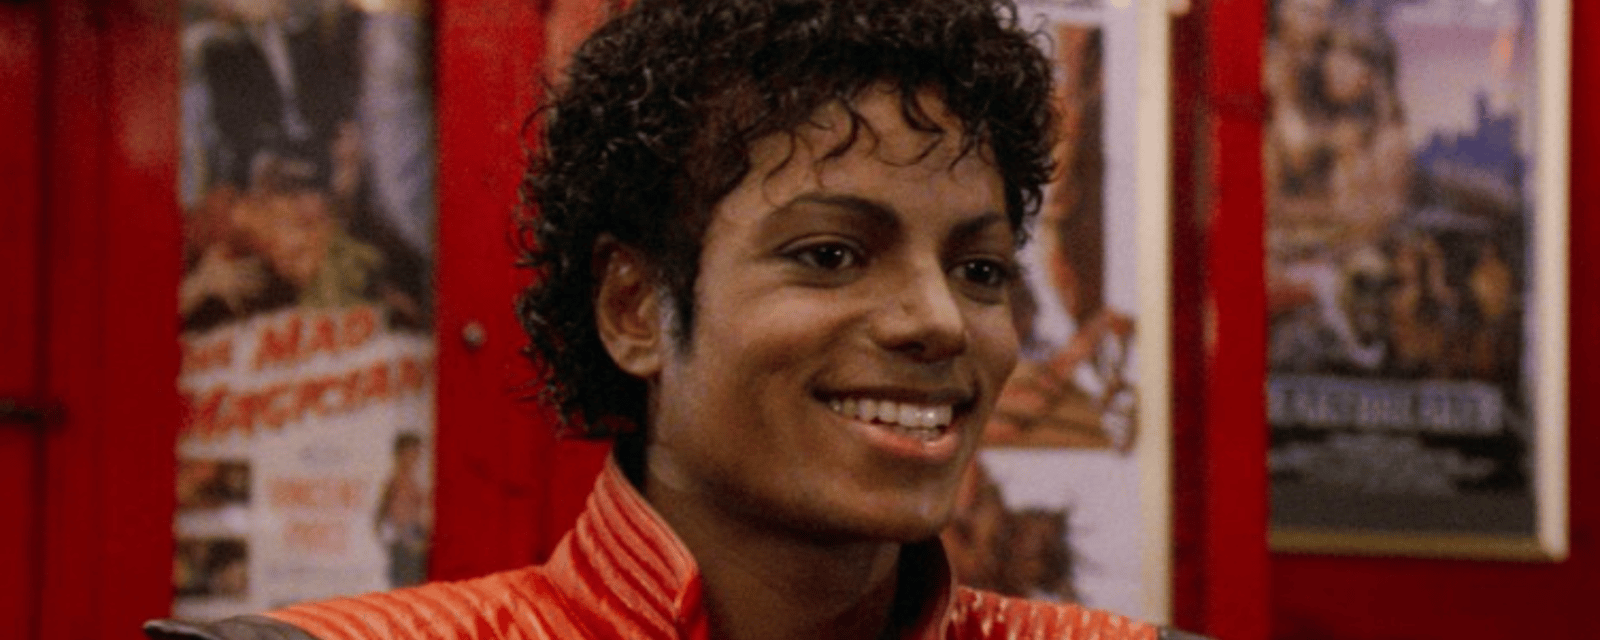 Le neveu de Michael Jackson est son portait tout craché